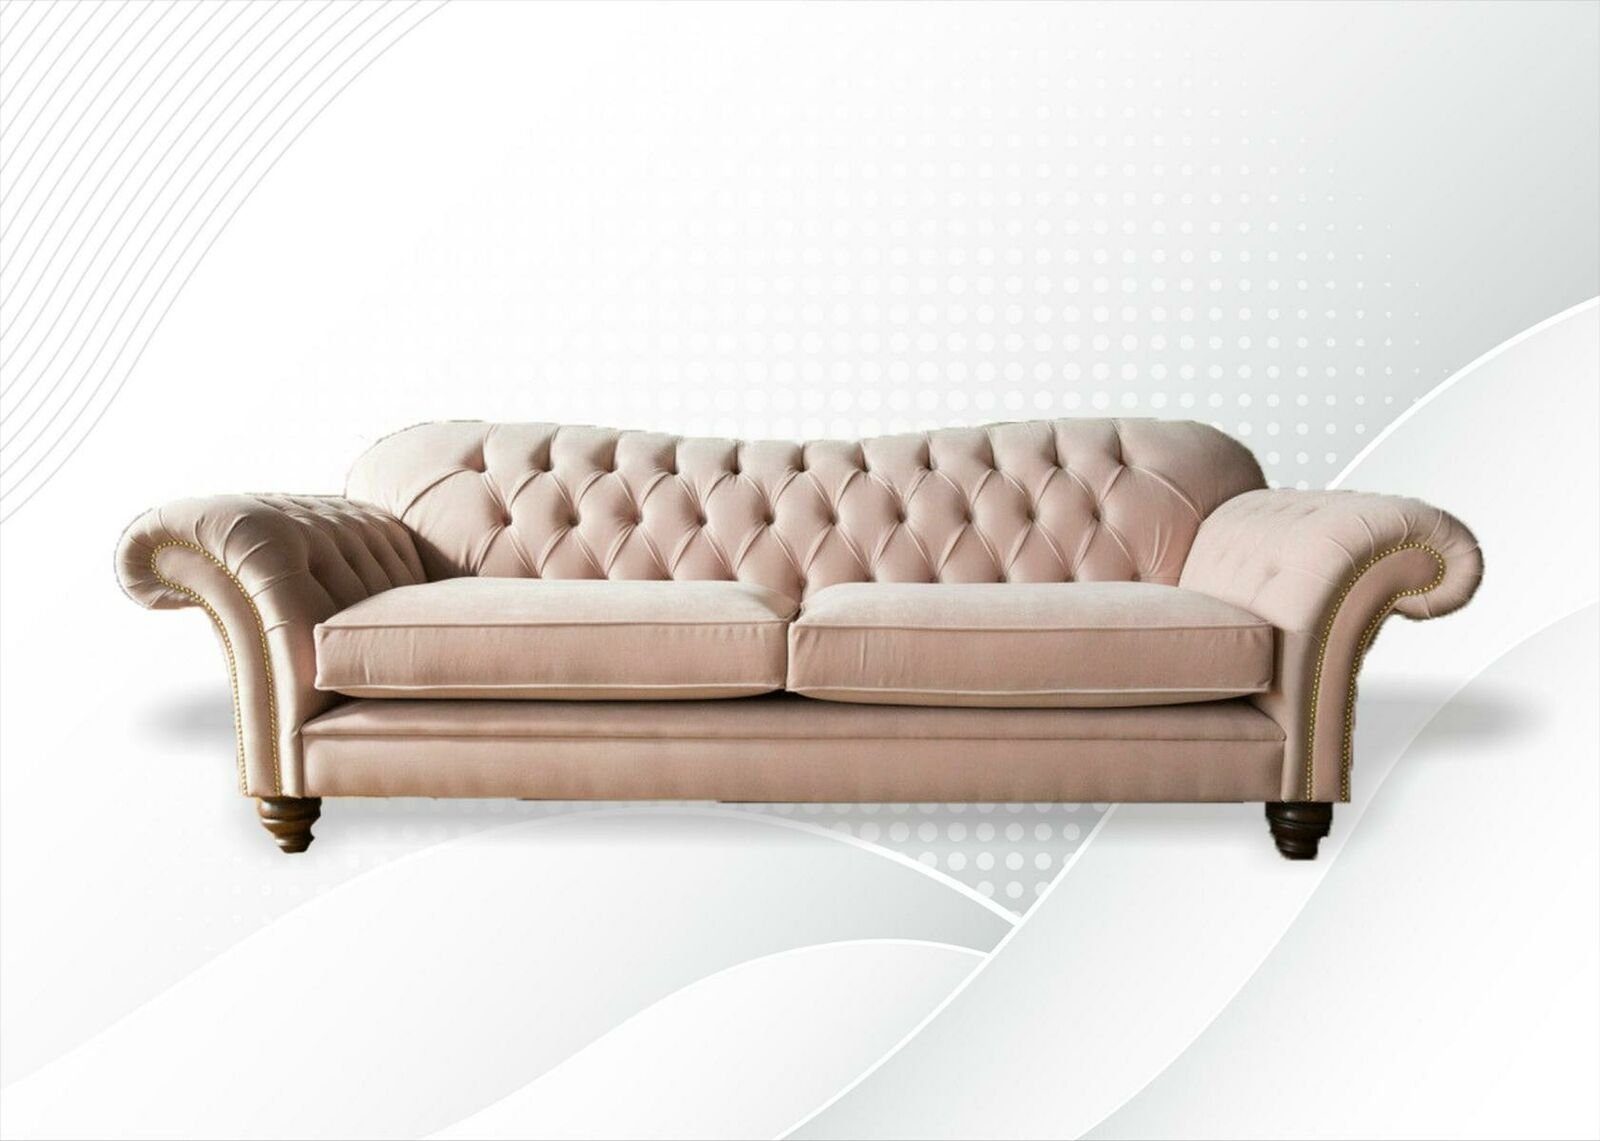 JVmoebel Chesterfield-Sofa, Chesterfield Pink Stoff Wohnzimmer Design Couchen Polster Sofa Sofas